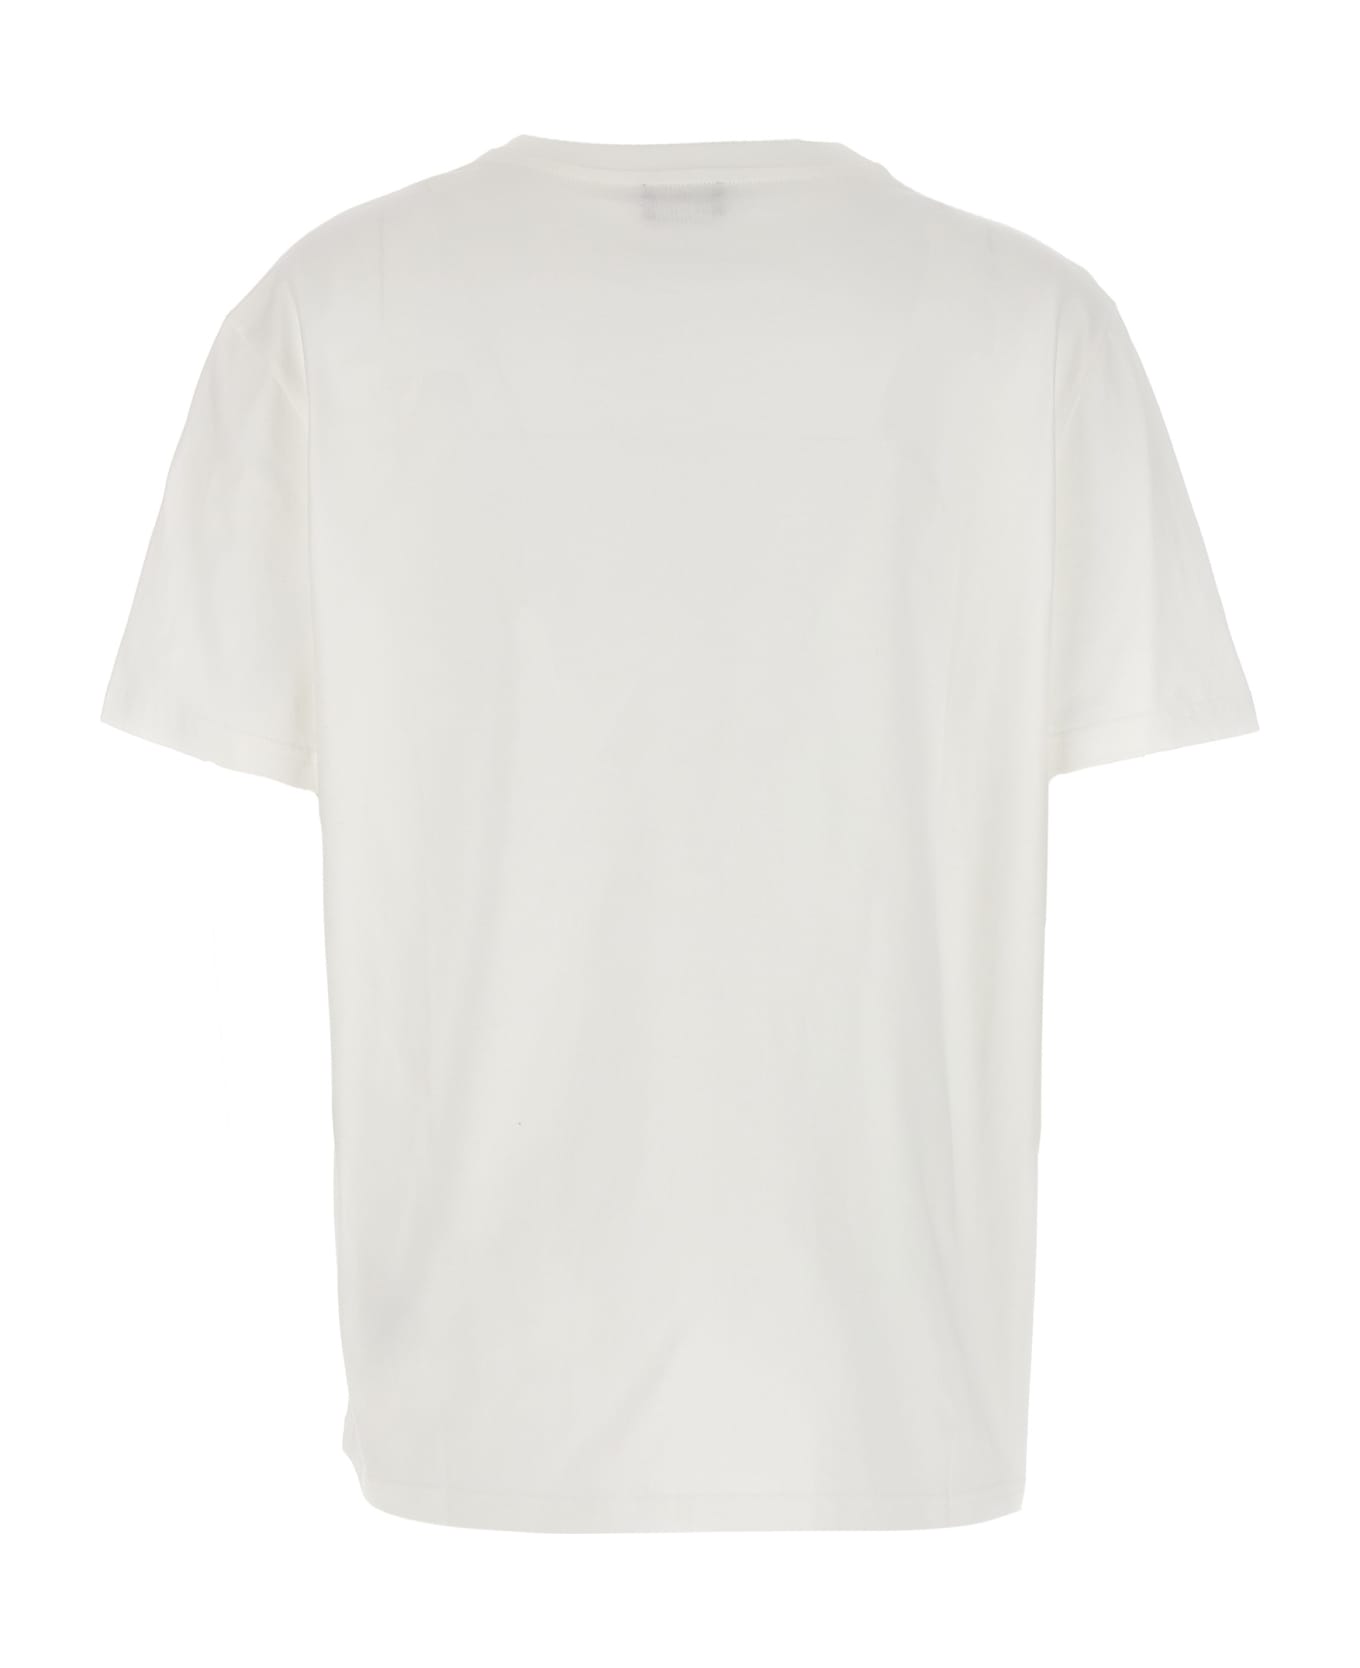 Etro Logo Embroidery T-shirt - White